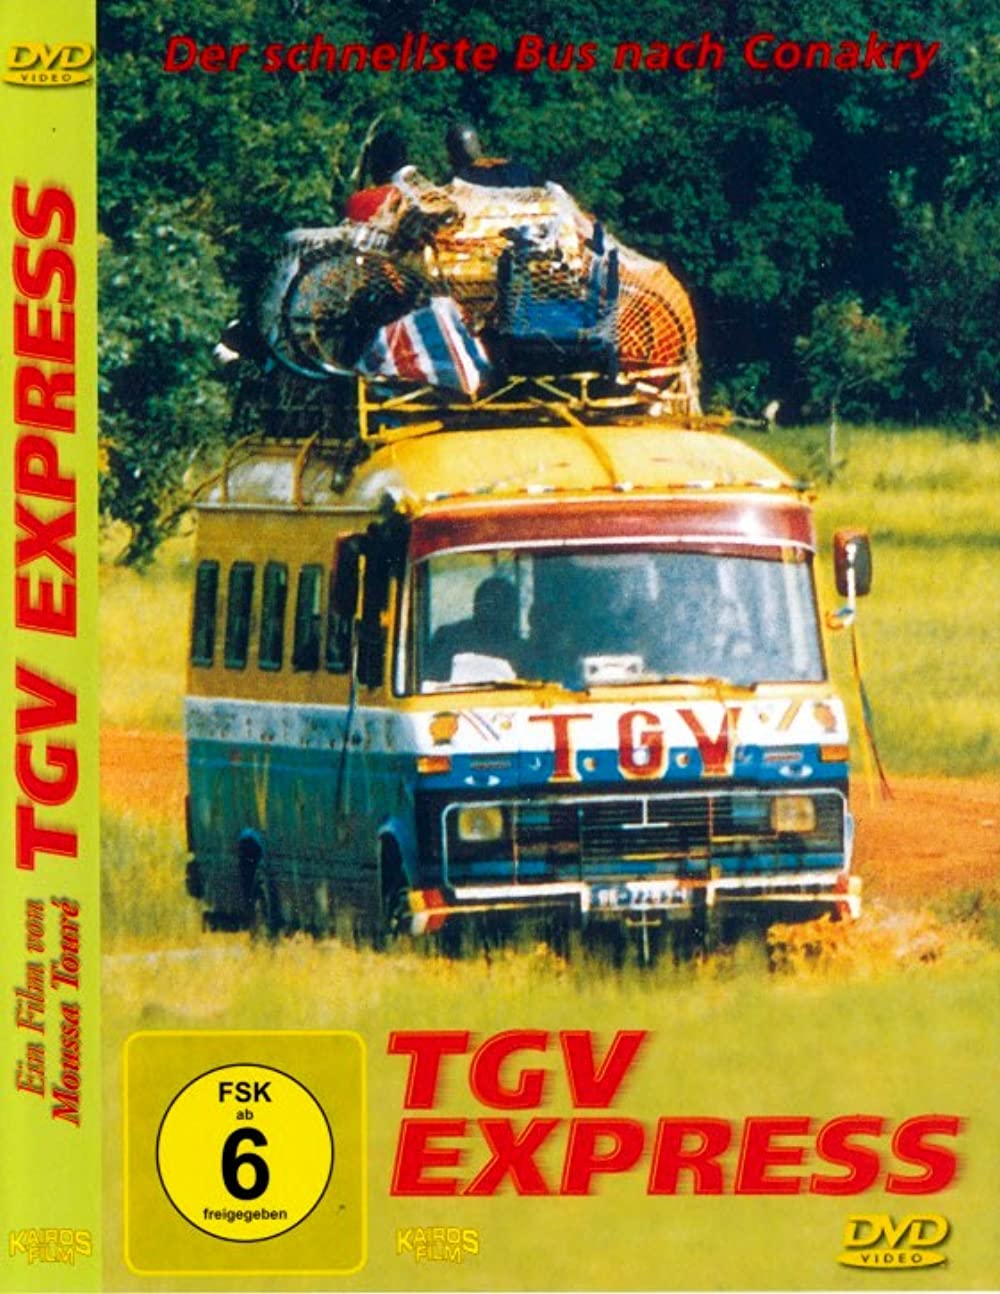 Filmbeschreibung zu TGV Express - Der schnellste Bus nach Conakry